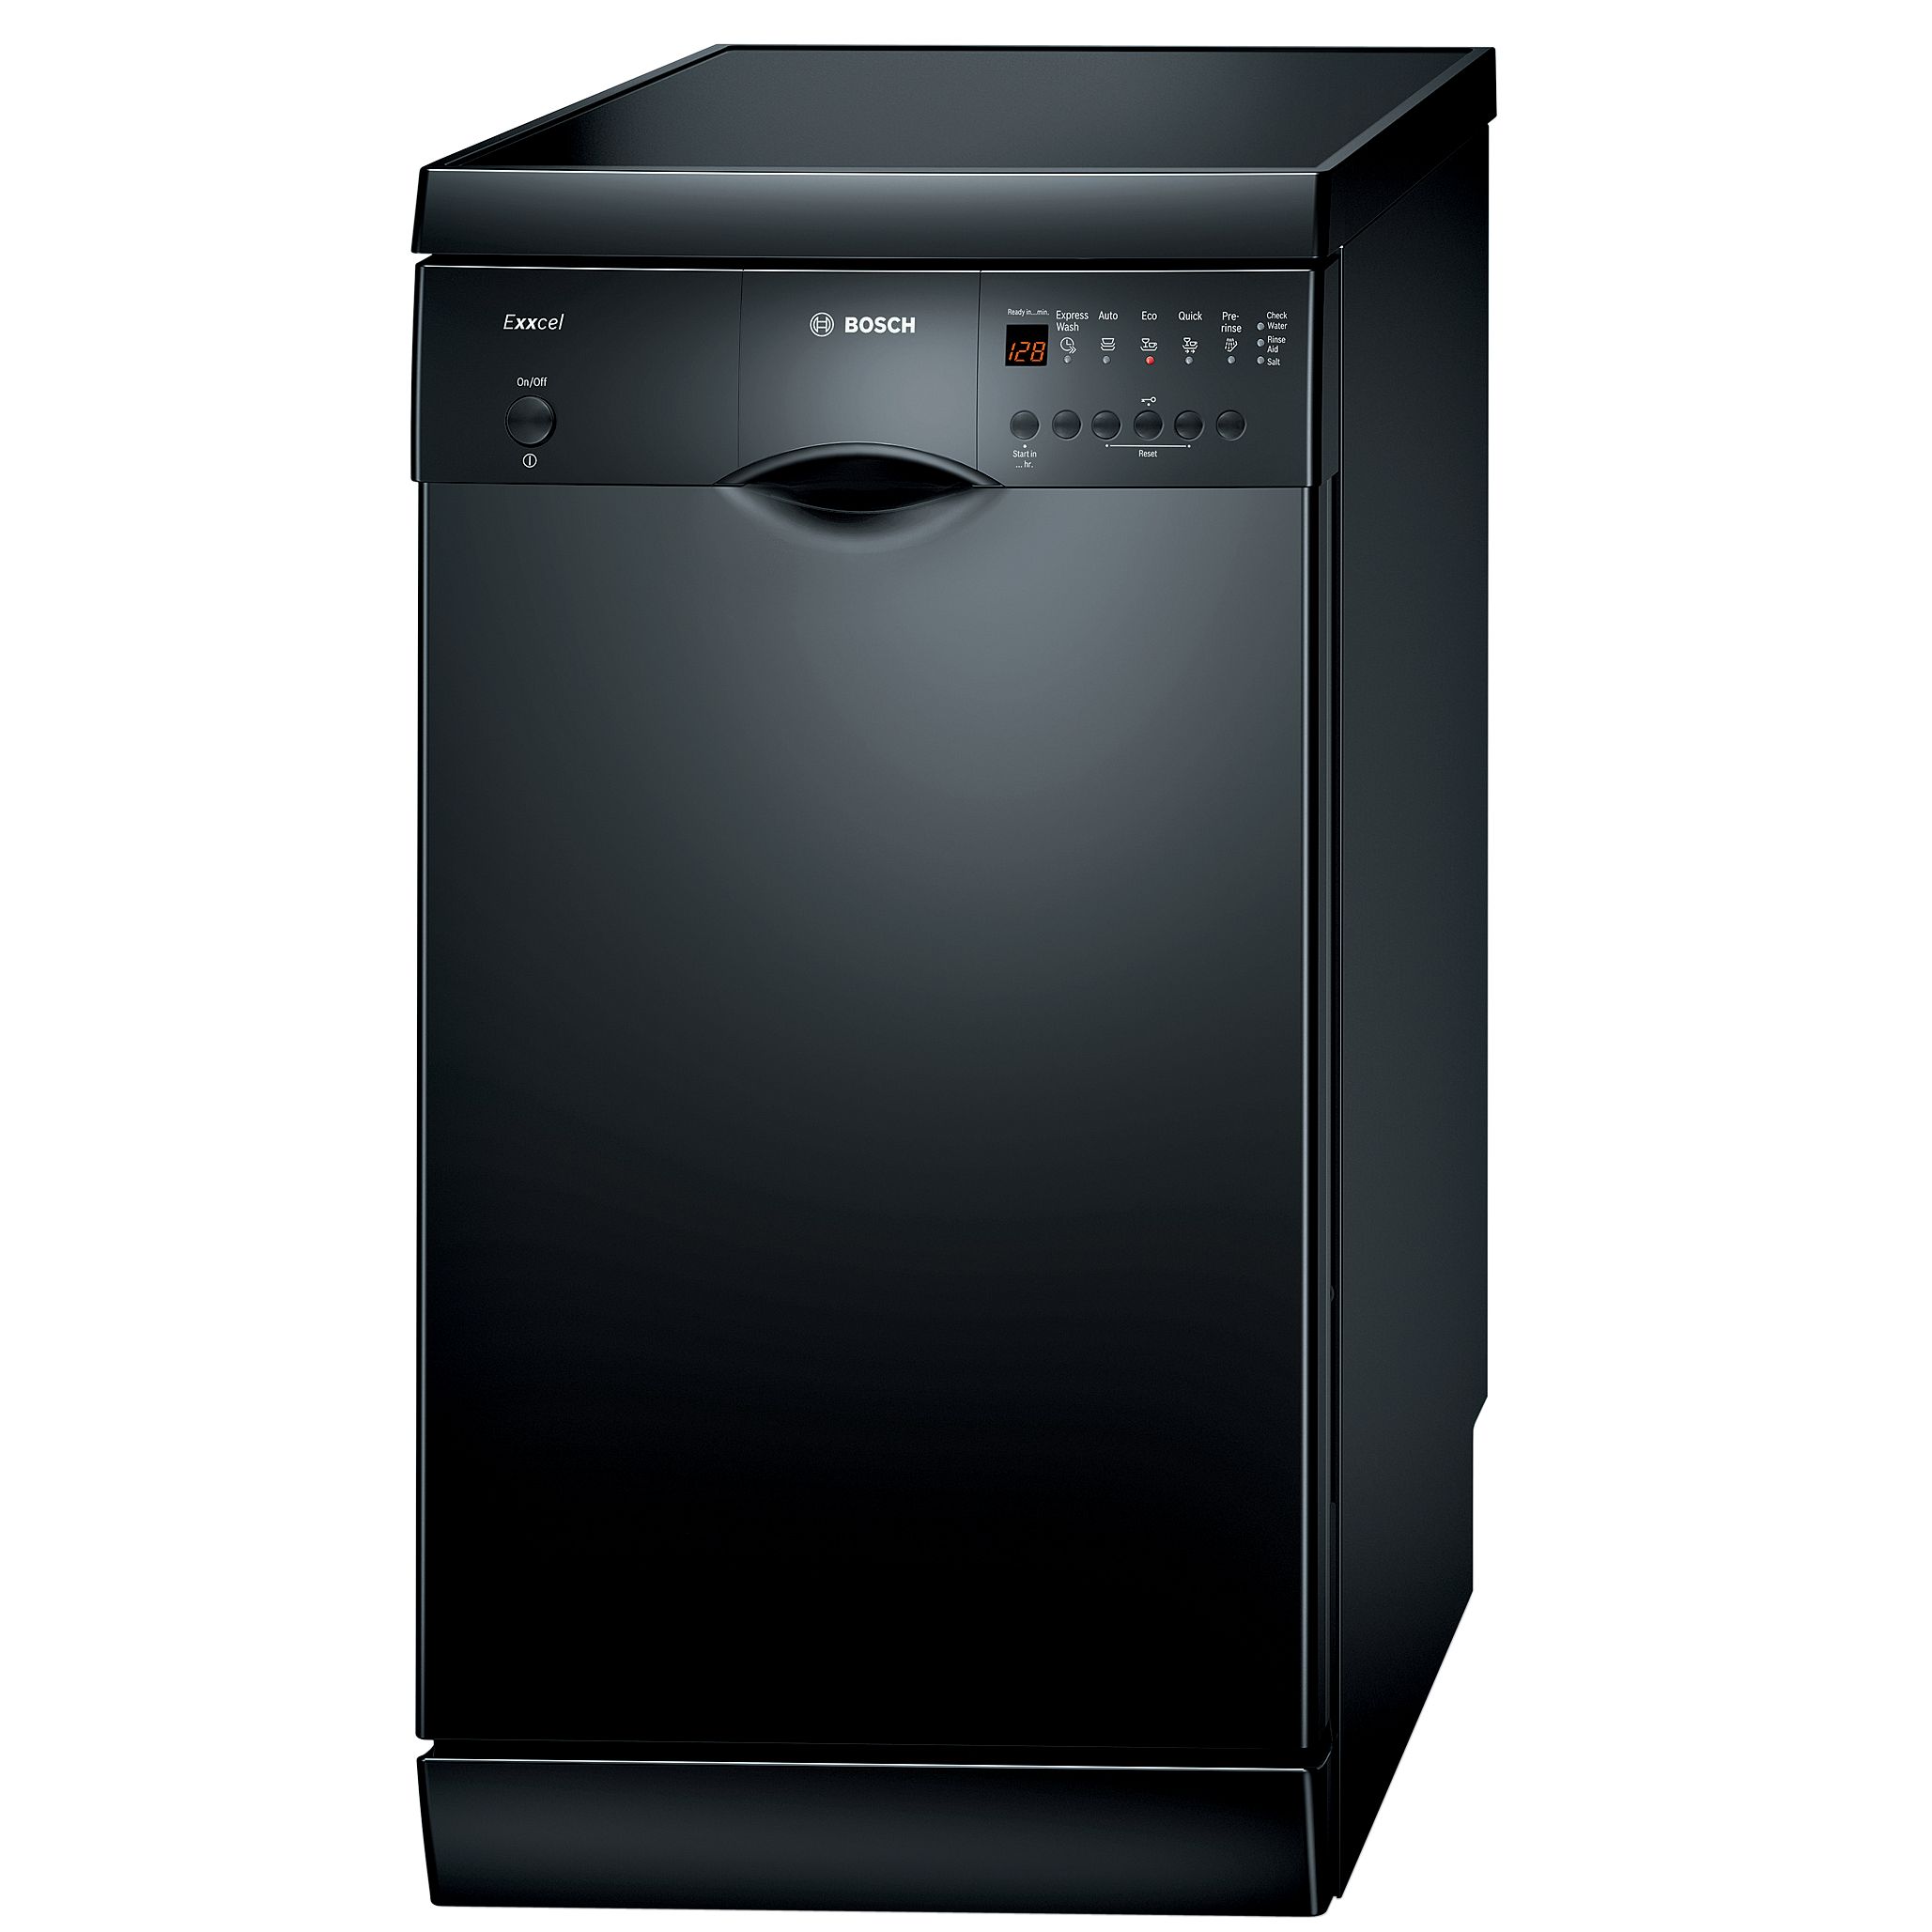 Bosch Exxcel SRS45E46GB Slimline Dishwasher, Black at JohnLewis